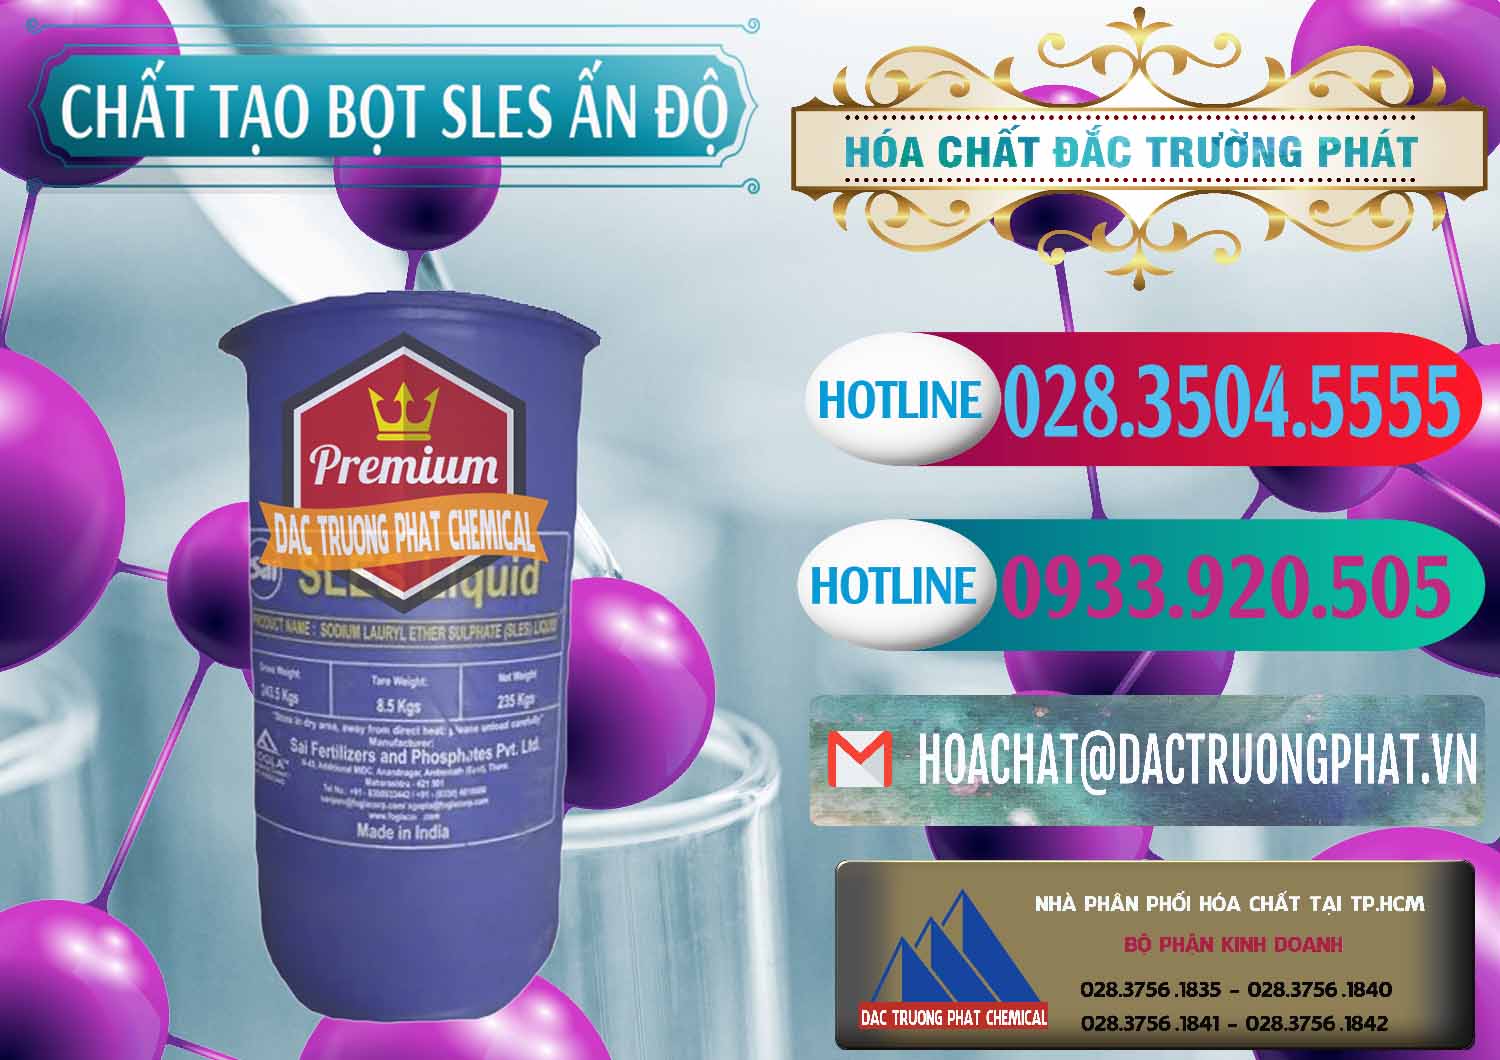 Nơi phân phối và bán Chất Tạo Bọt Sles - Sodium Lauryl Ether Sulphate Ấn Độ India - 0333 - Công ty kinh doanh và phân phối hóa chất tại TP.HCM - truongphat.vn